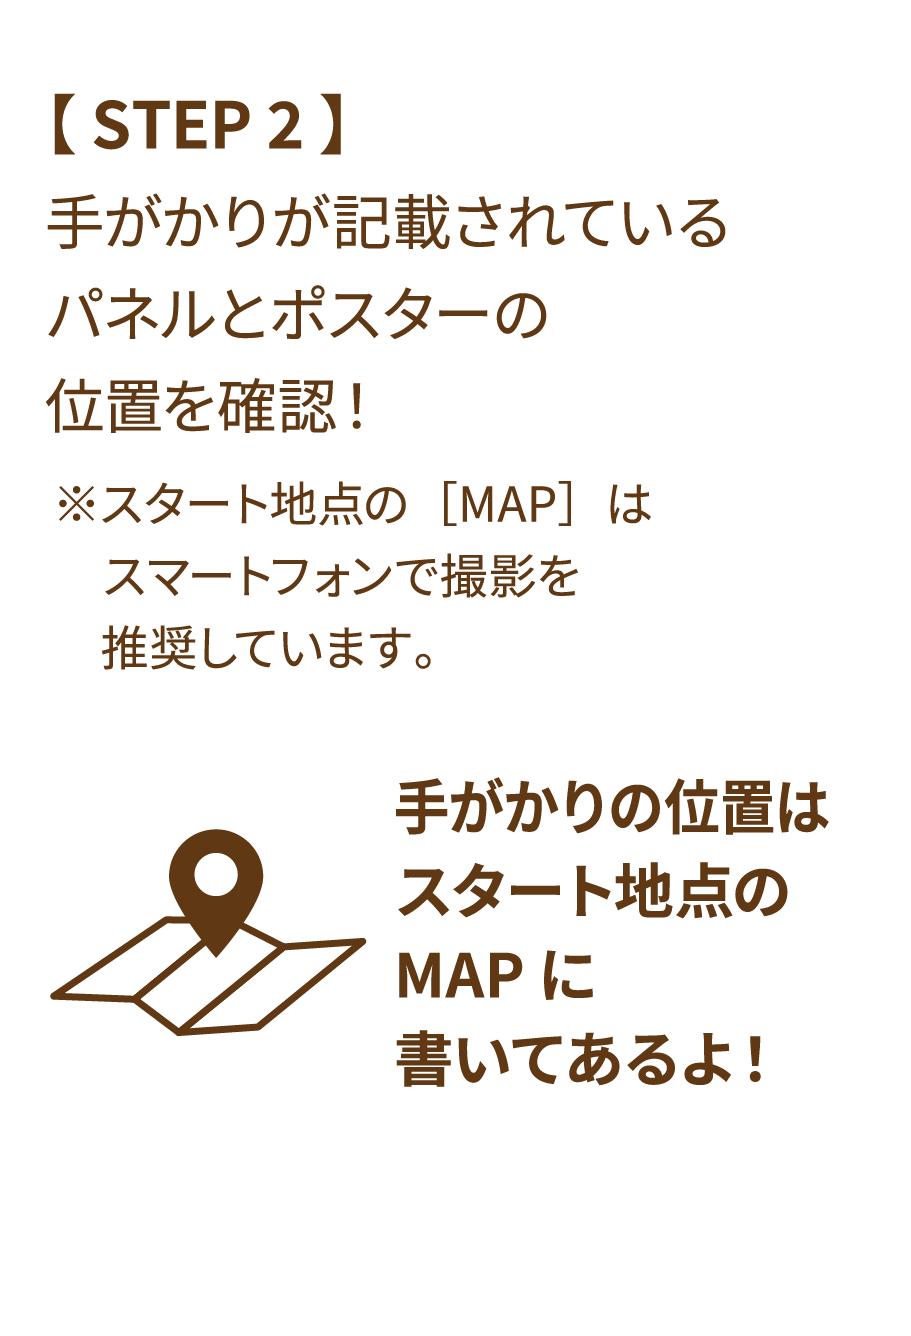 【 STEP 2 】手がかりが記載されているパネルとポスターの位置を確認！ ※スタート地点の［MAP］はスマートフォンで撮影を推奨しています。手がかりの位置はスタート地点のMAPに書いてあるよ！